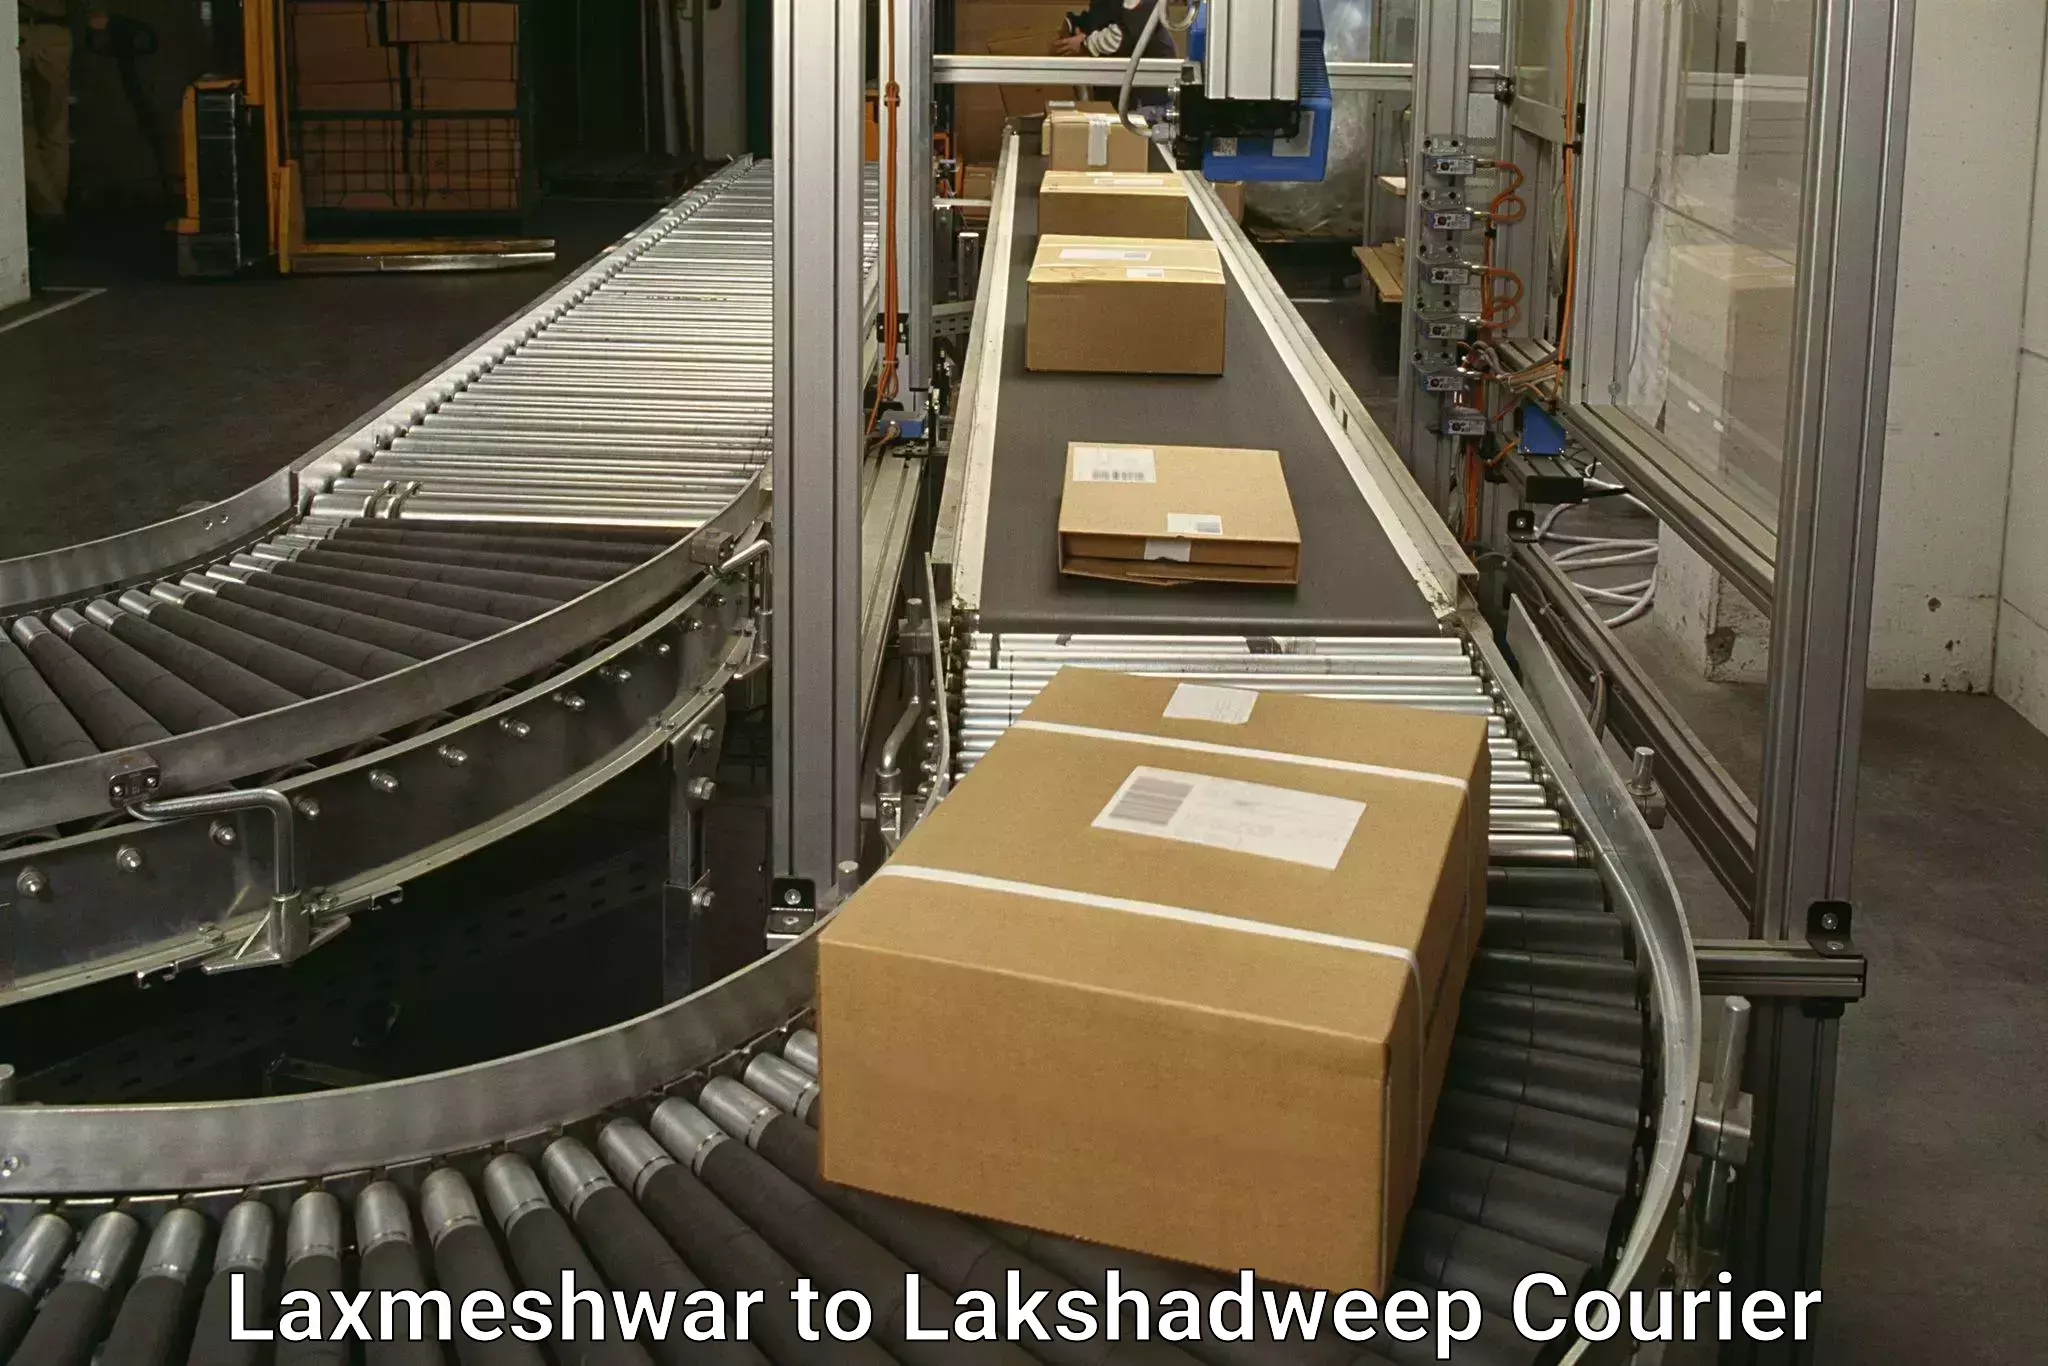 Budget-friendly shipping Laxmeshwar to Lakshadweep